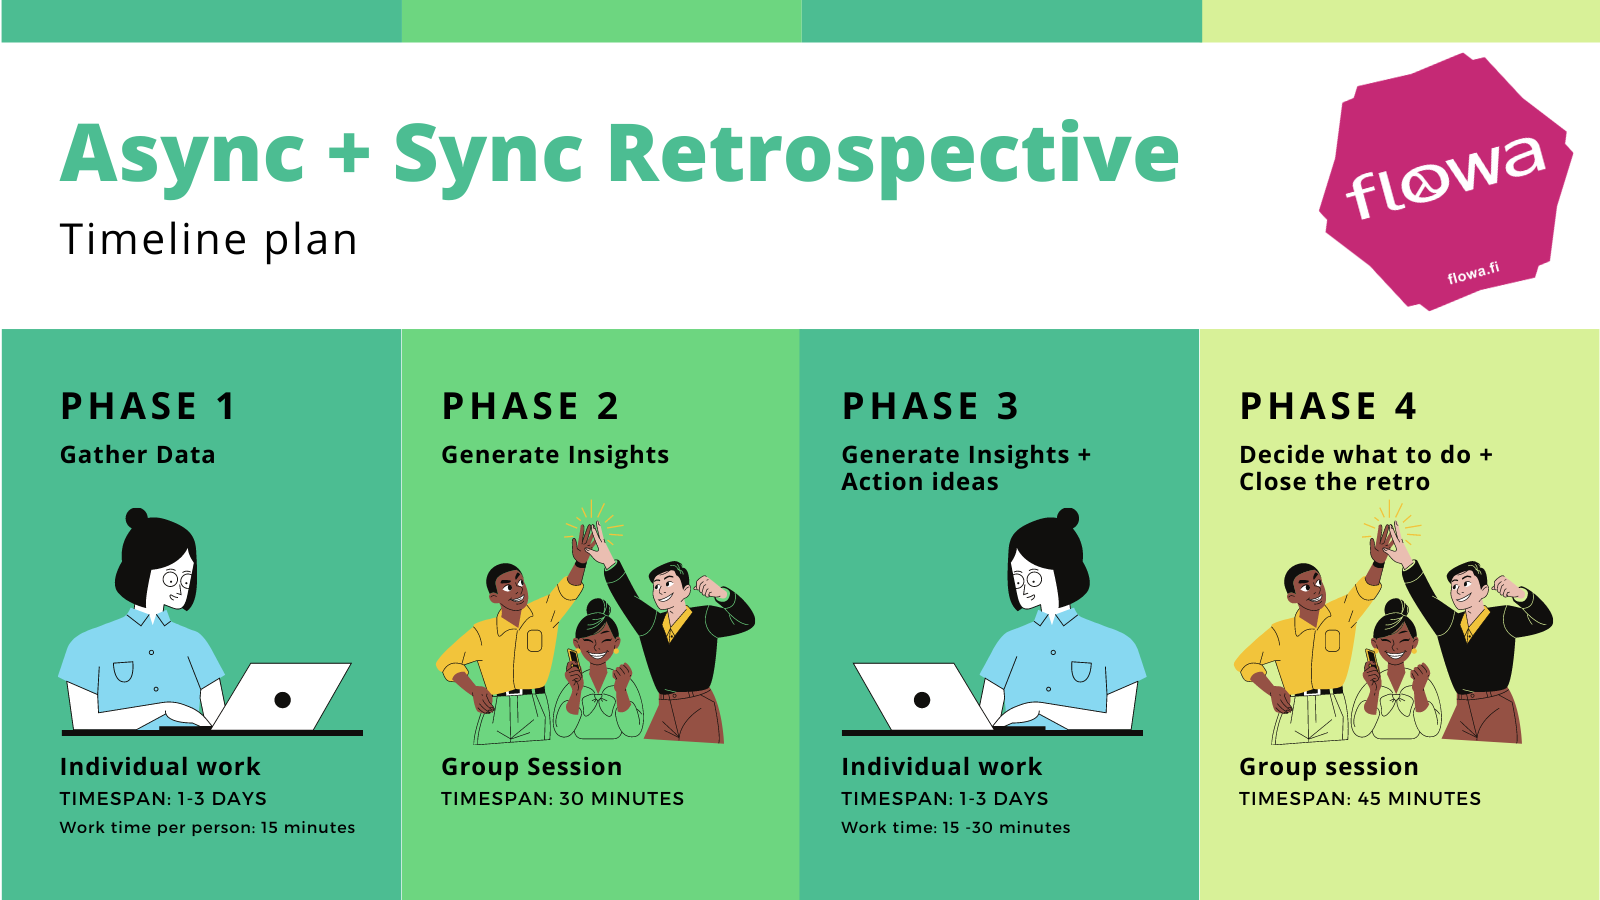 Async + Sync Remote Retrospective Plan